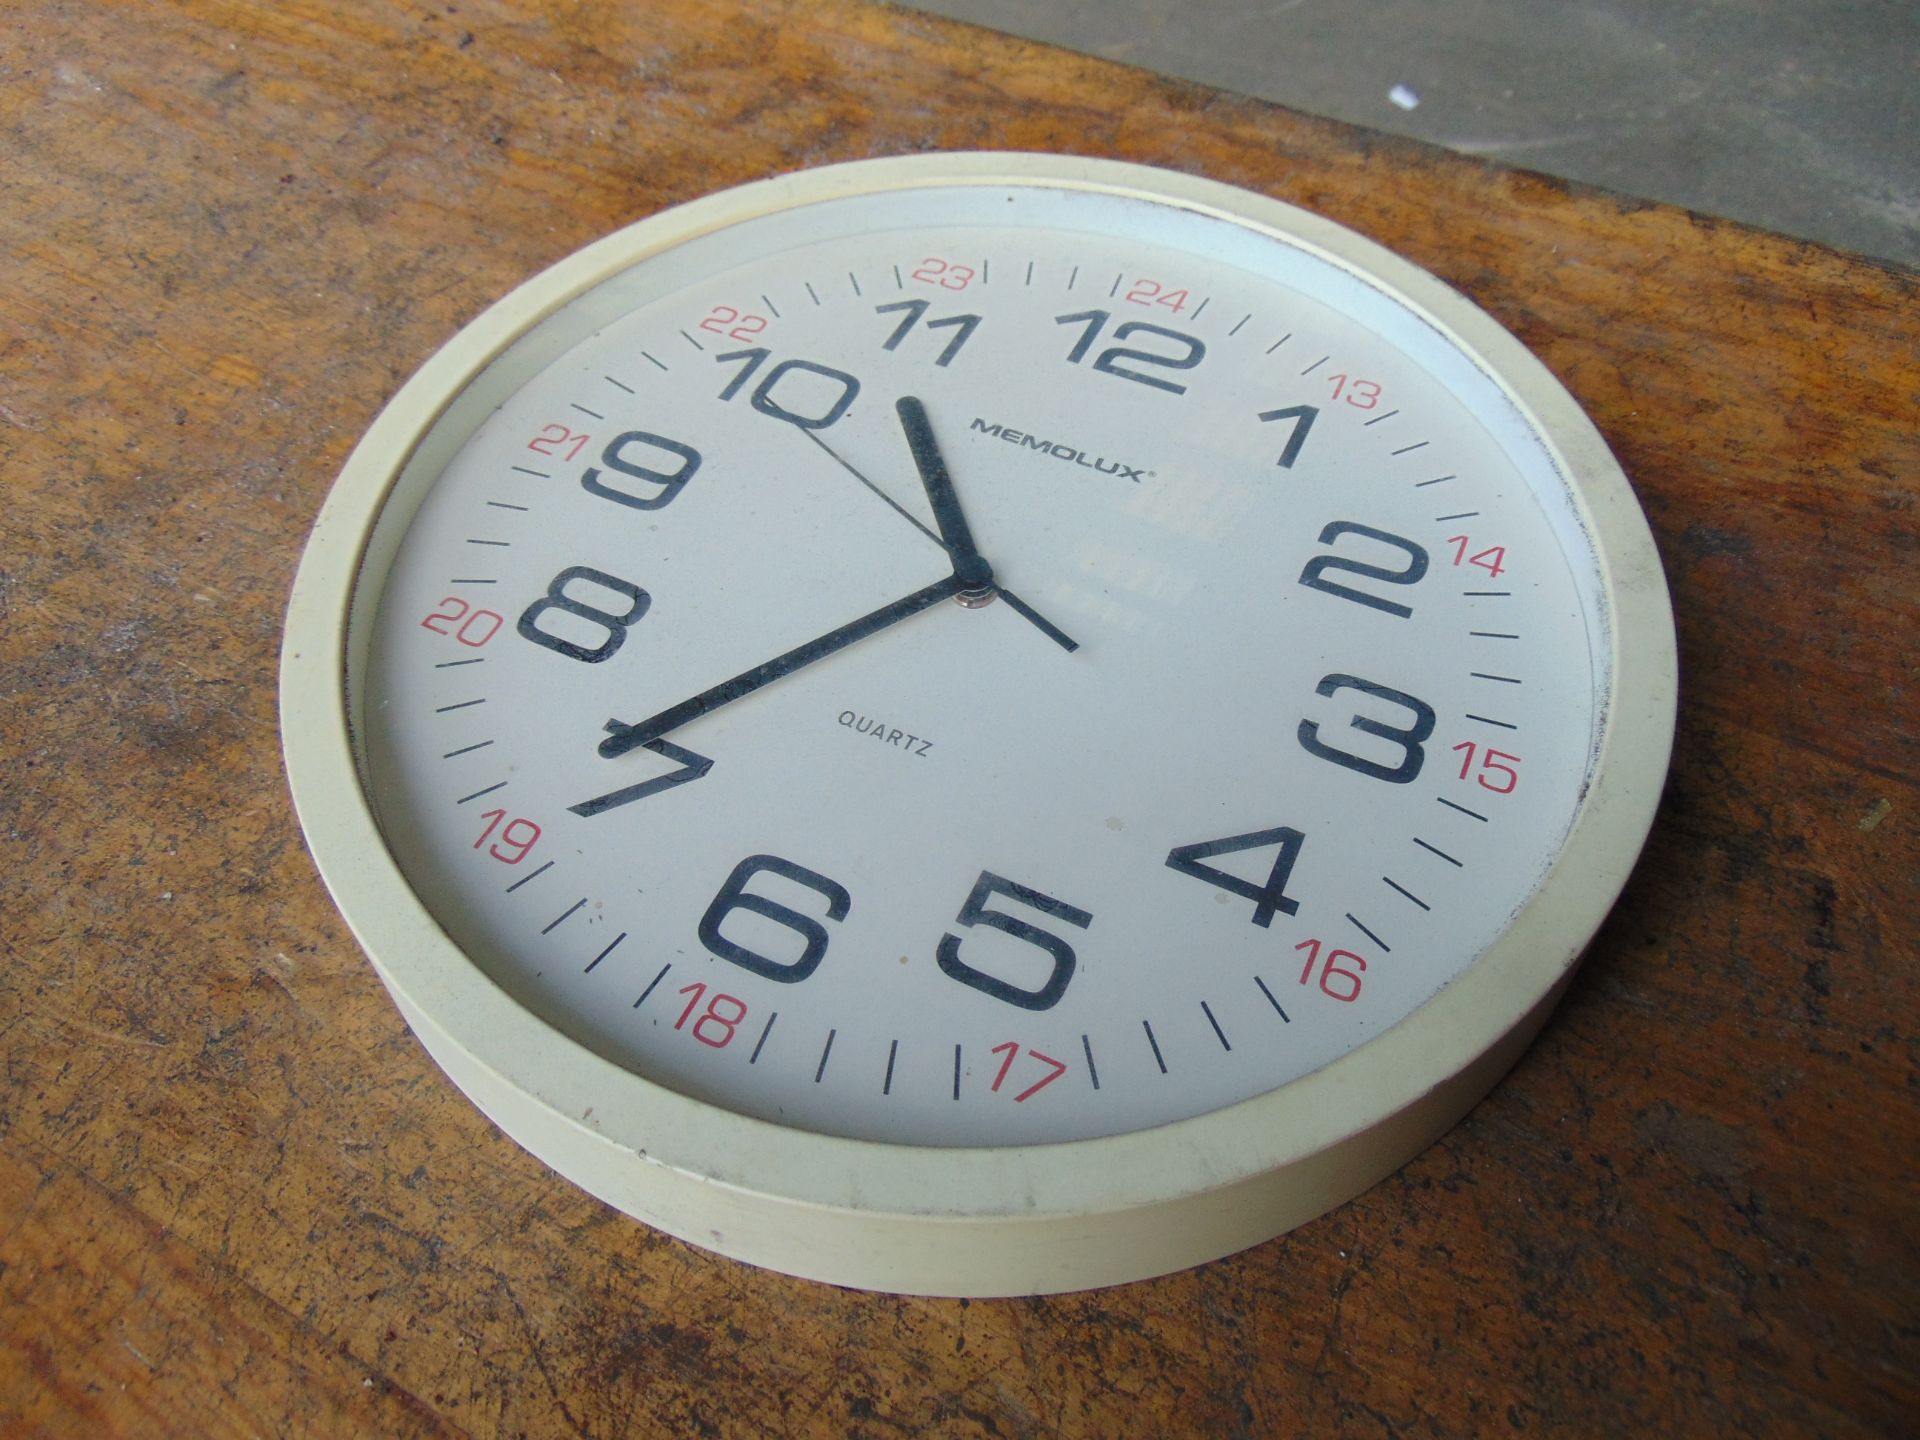 Memolux MoD 24hr Clock - Image 4 of 4